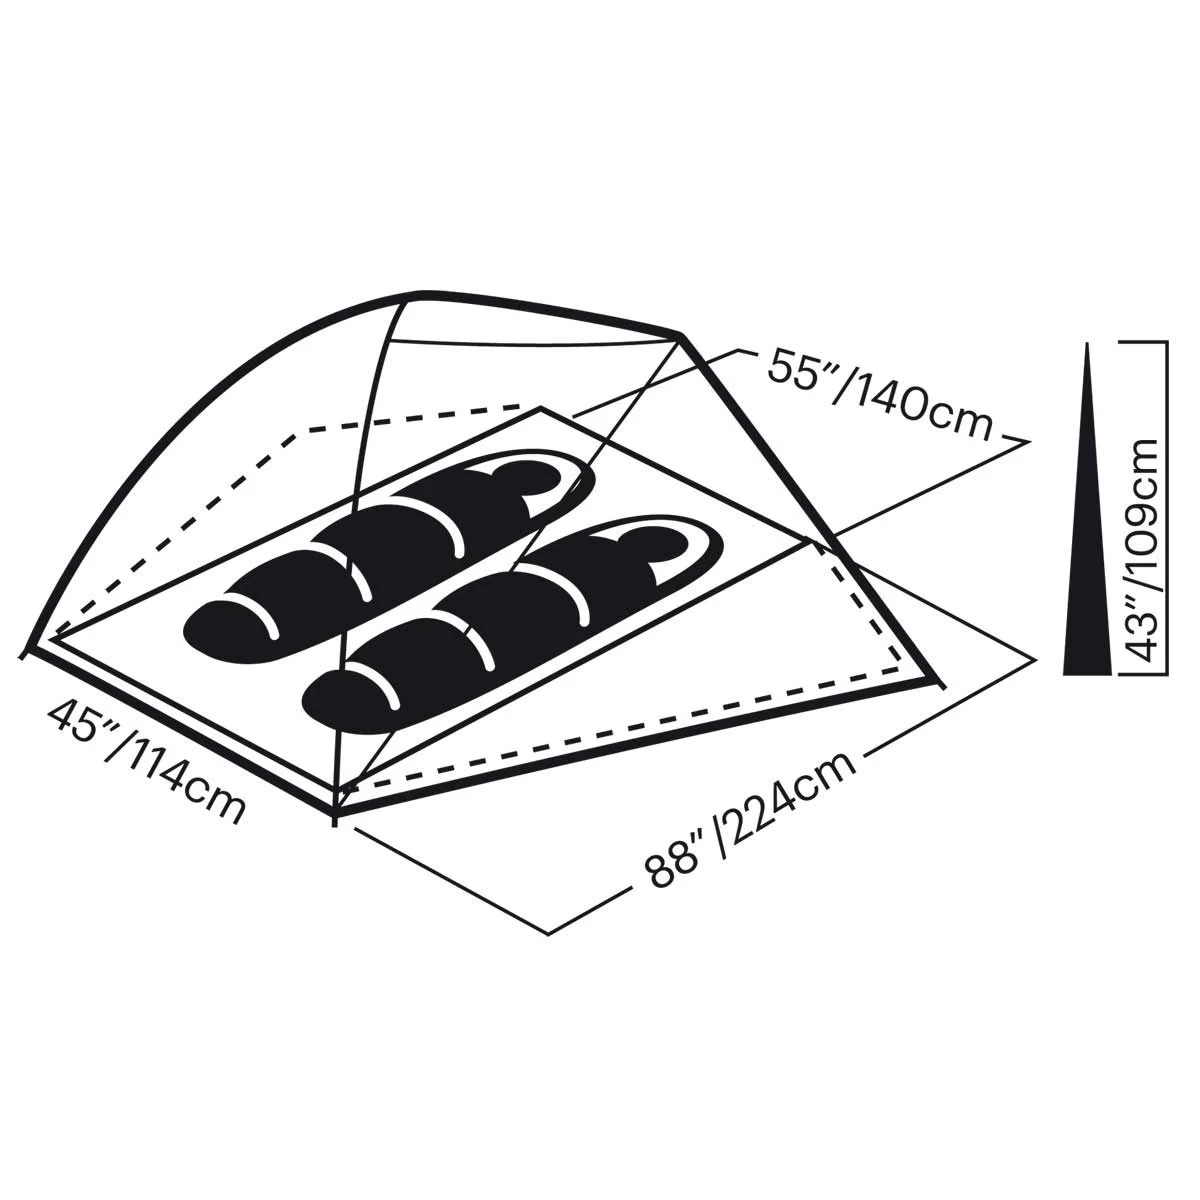 Midori 2 tent spec diagram